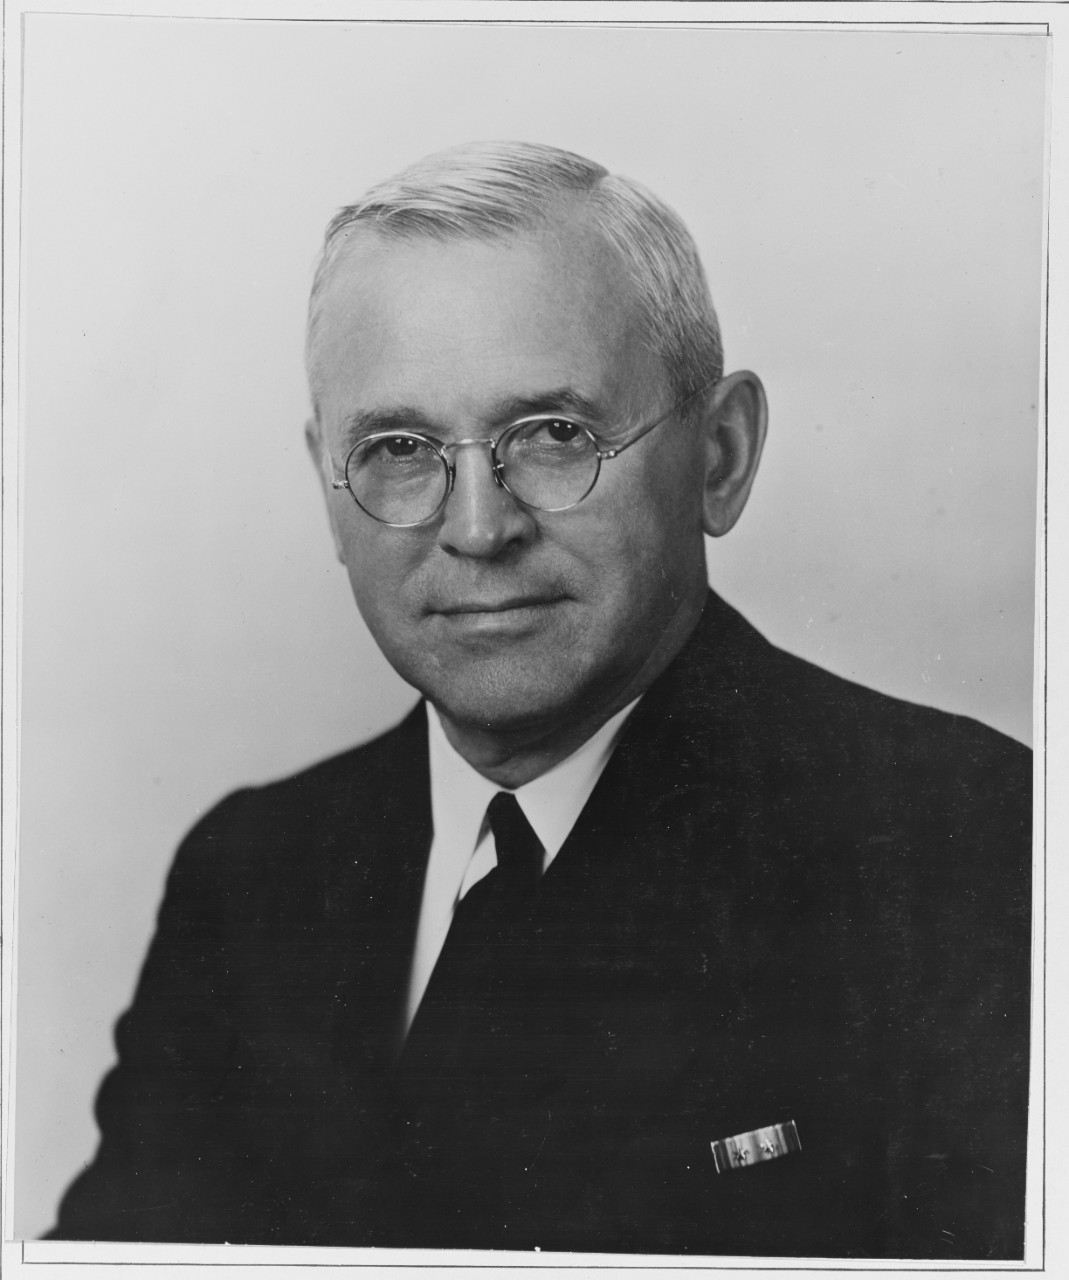 Van Keuren, Rear Admiral., USN